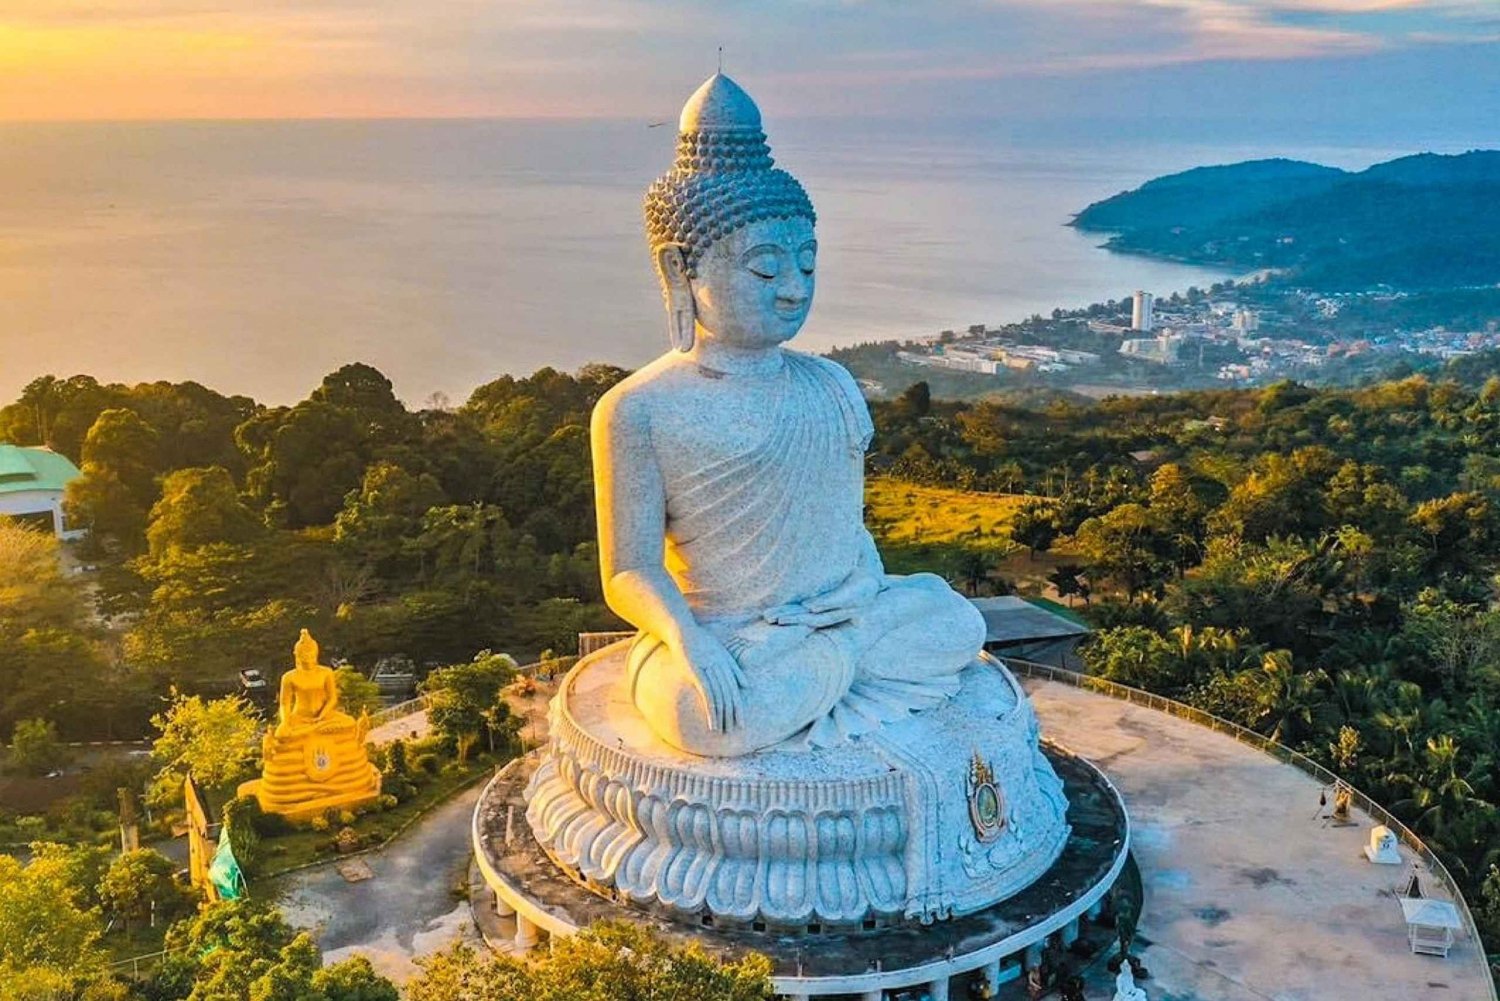 Phuket : visite guidée du Big Buddha, de la vieille ville de Phuket et du Wat Chalong